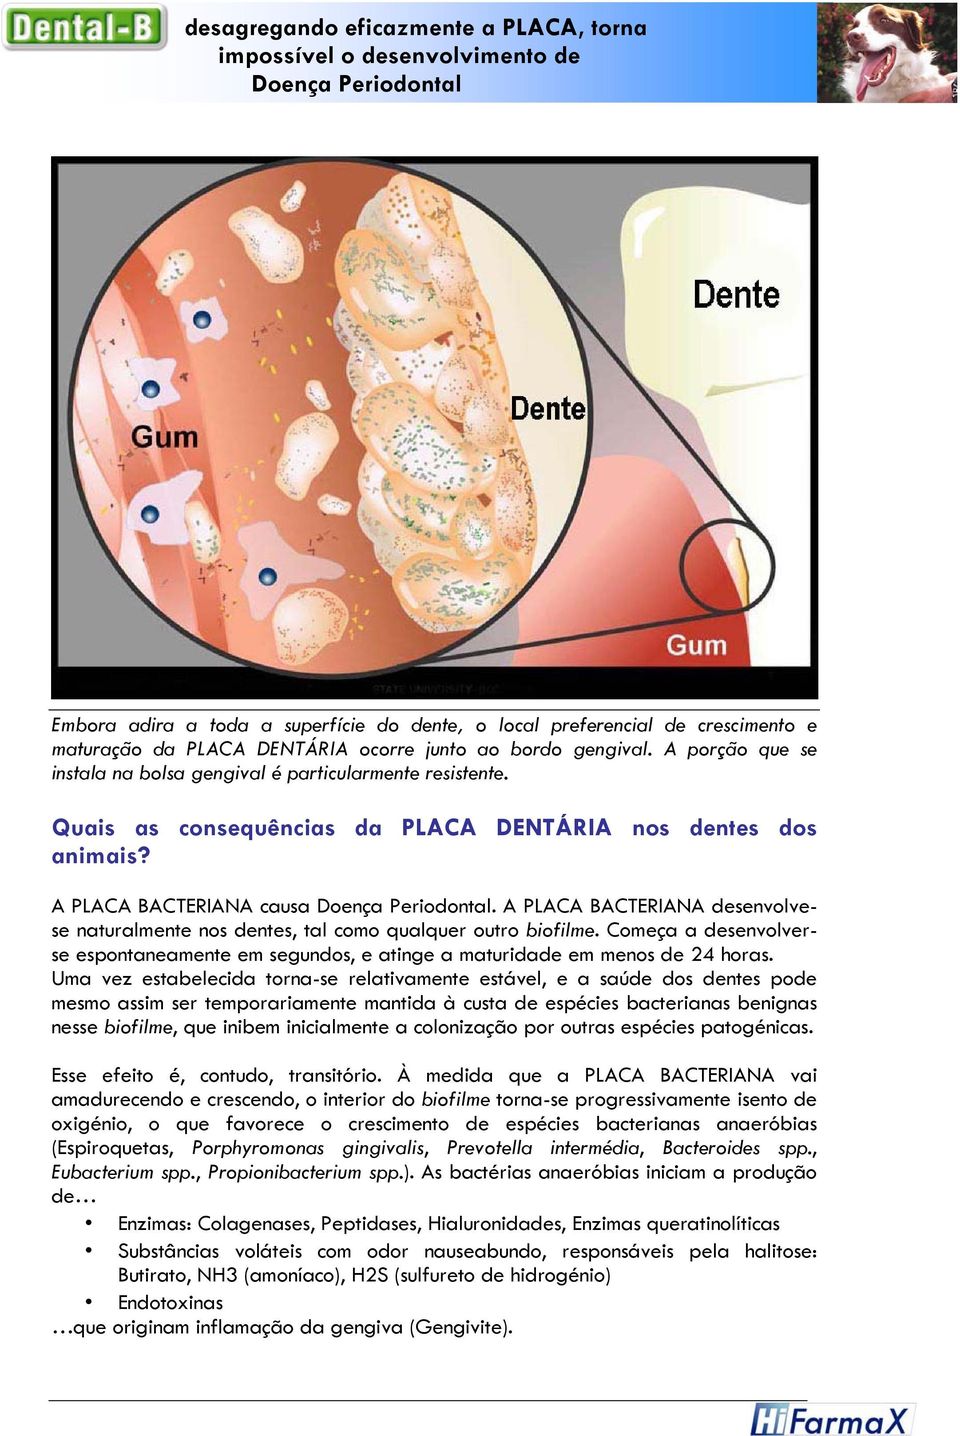 A PLACA BACTERIANA causa Doença Periodontal. A PLACA BACTERIANA desenvolvese naturalmente nos dentes, tal como qualquer outro biofilme.